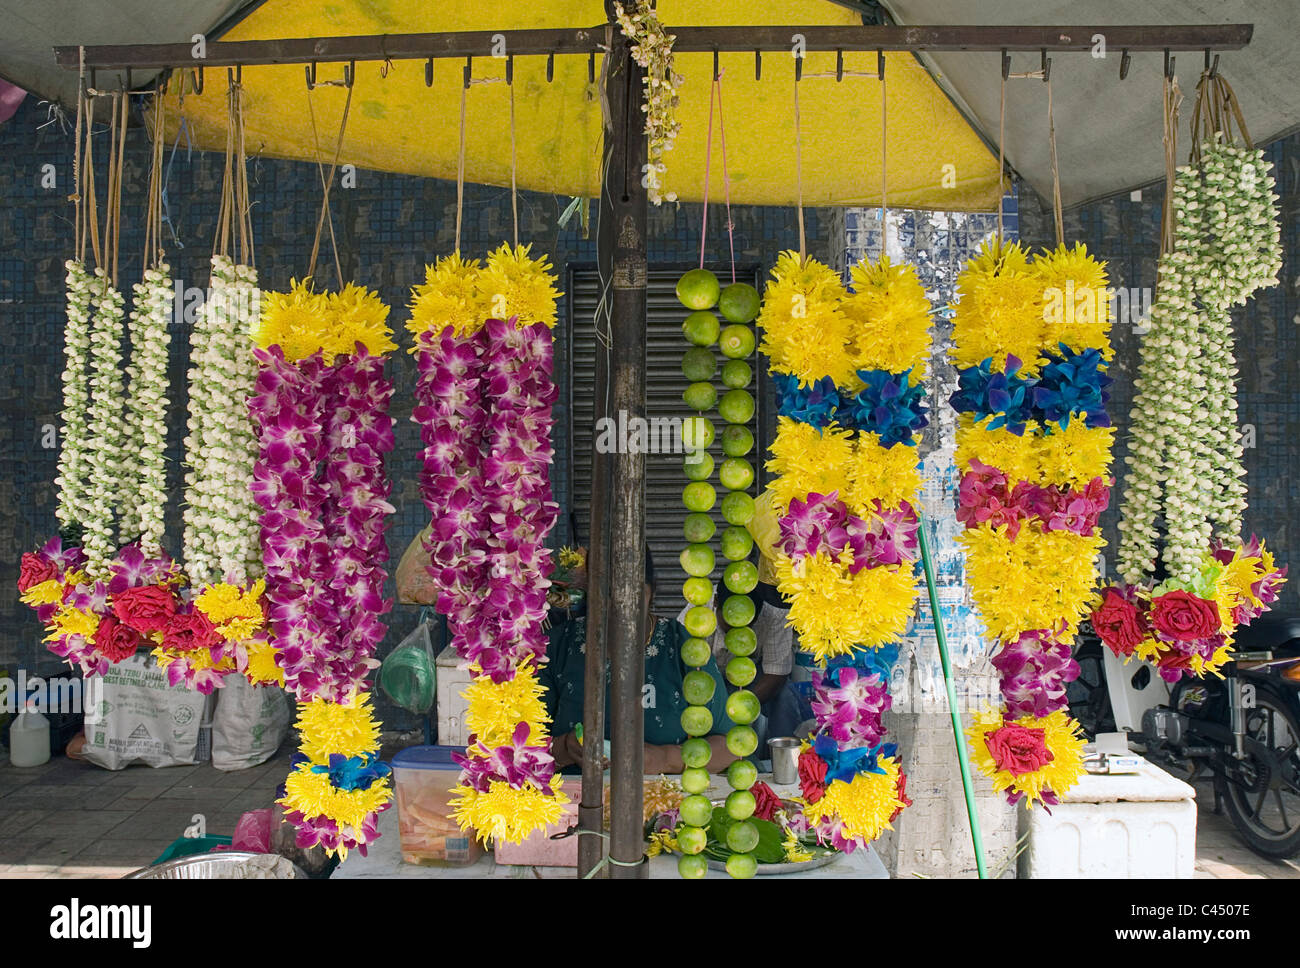 Malaysia, Kuala Lumpur, Sri Mahamariamman Temple, jasmine garlands on market stall Stock Photo